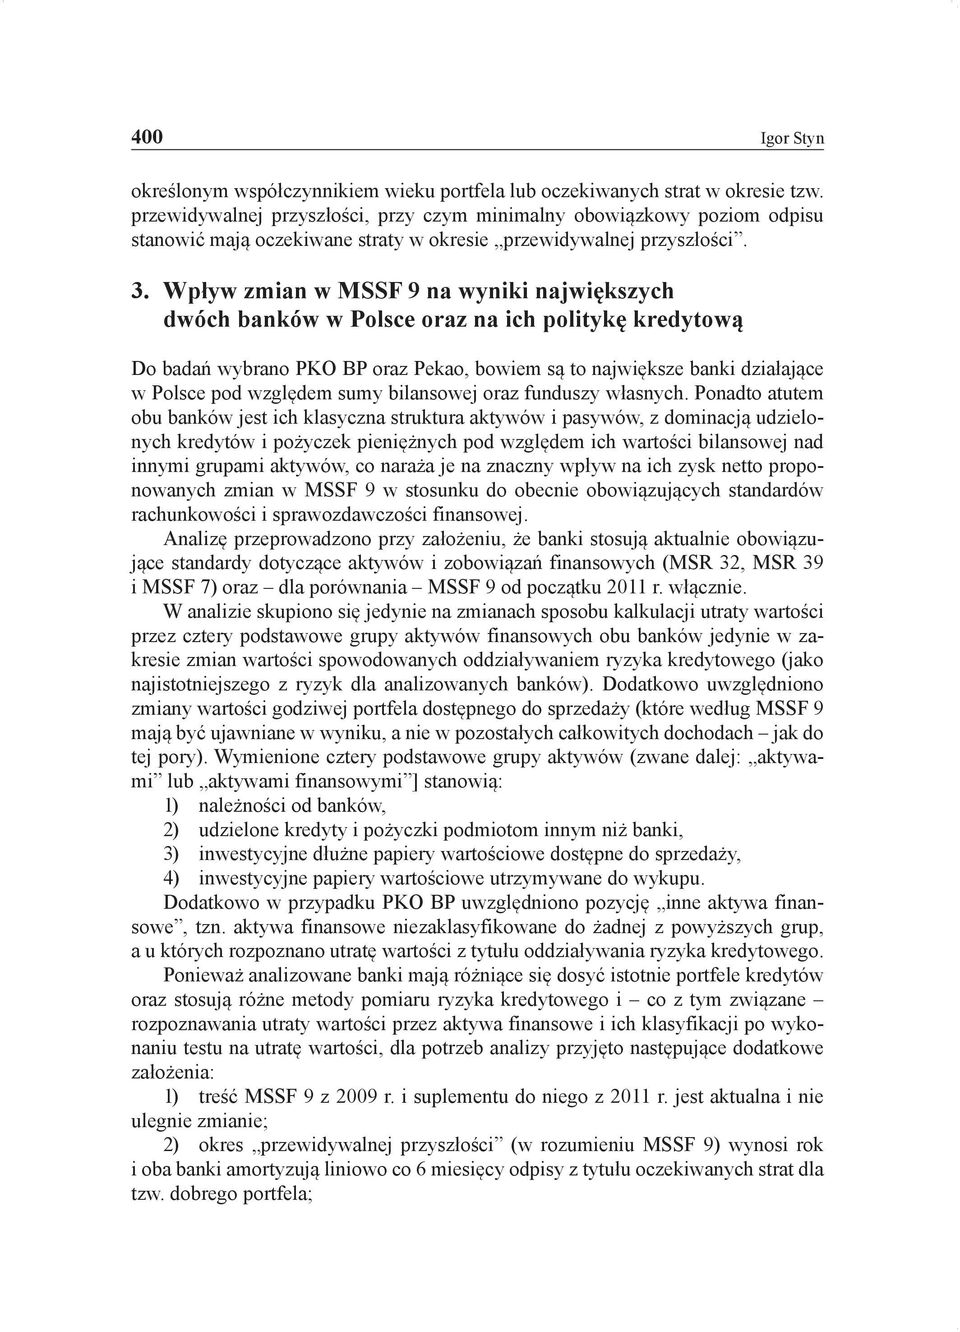 Wpływ zmian w MSSF 9 na wyniki największych dwóch banków w Polsce oraz na ich politykę kredytową Do badań wybrano PKO BP oraz Pekao, bowiem są to największe banki działające w Polsce pod względem